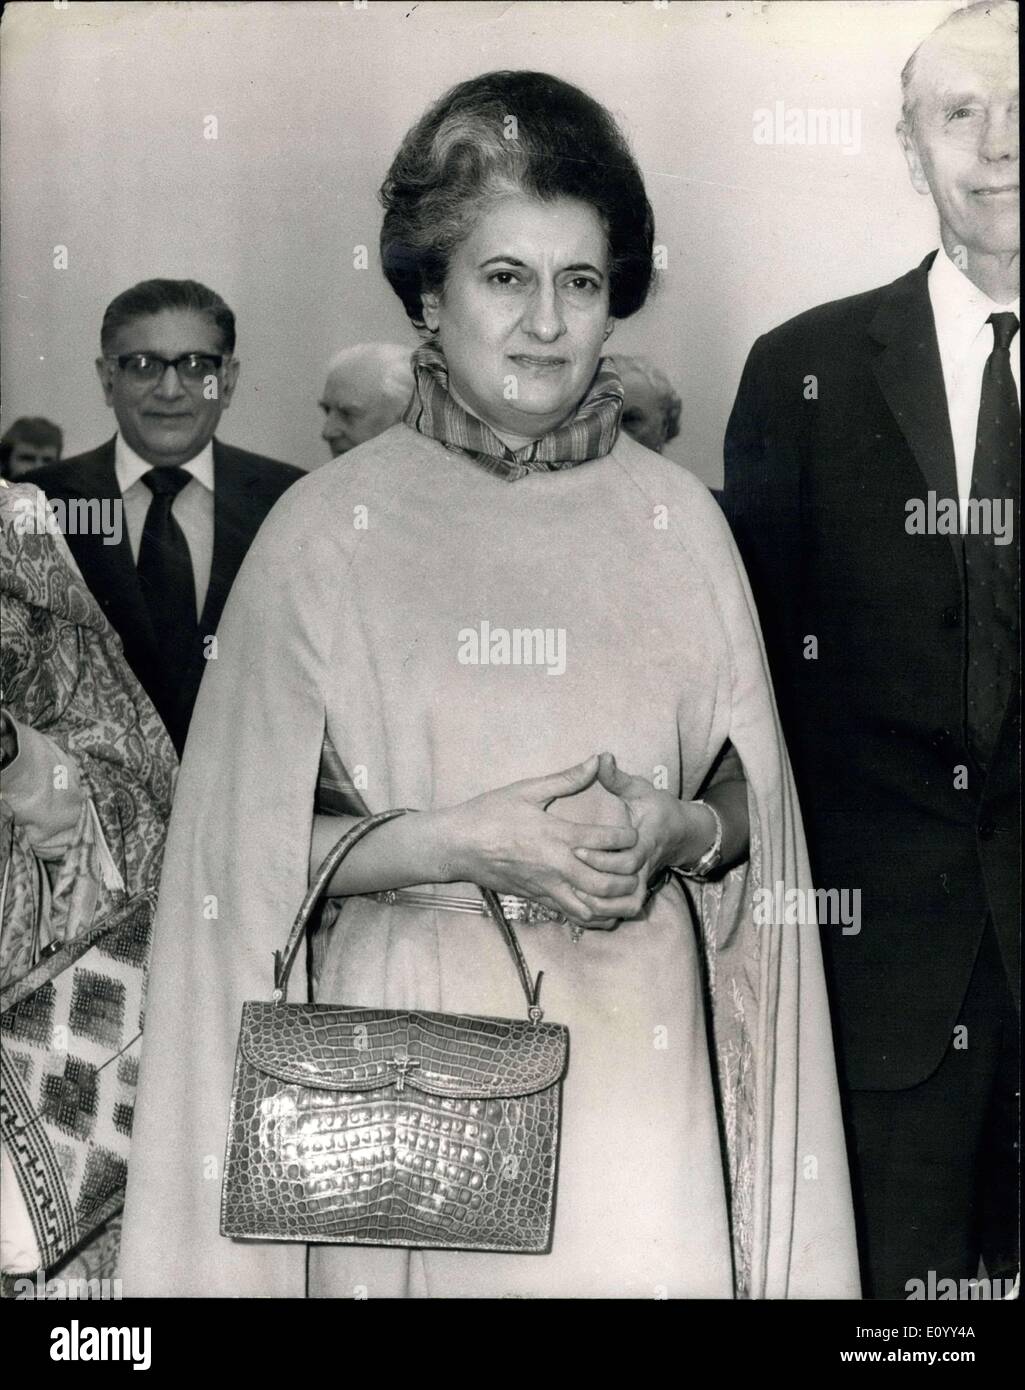 29. Oktober 1971 - Indira Gandhi kommt In London: Frau Indira Gandhi, der Premierminister Indira am Flughafen London ist heute angekommen. Sie war im Douglas Rome, Außenminister traf. Foto zeigt Frau Indira Gandhi bei ihrer Ankunft am Flughafen Heathrow heute abgebildet. Stockfoto